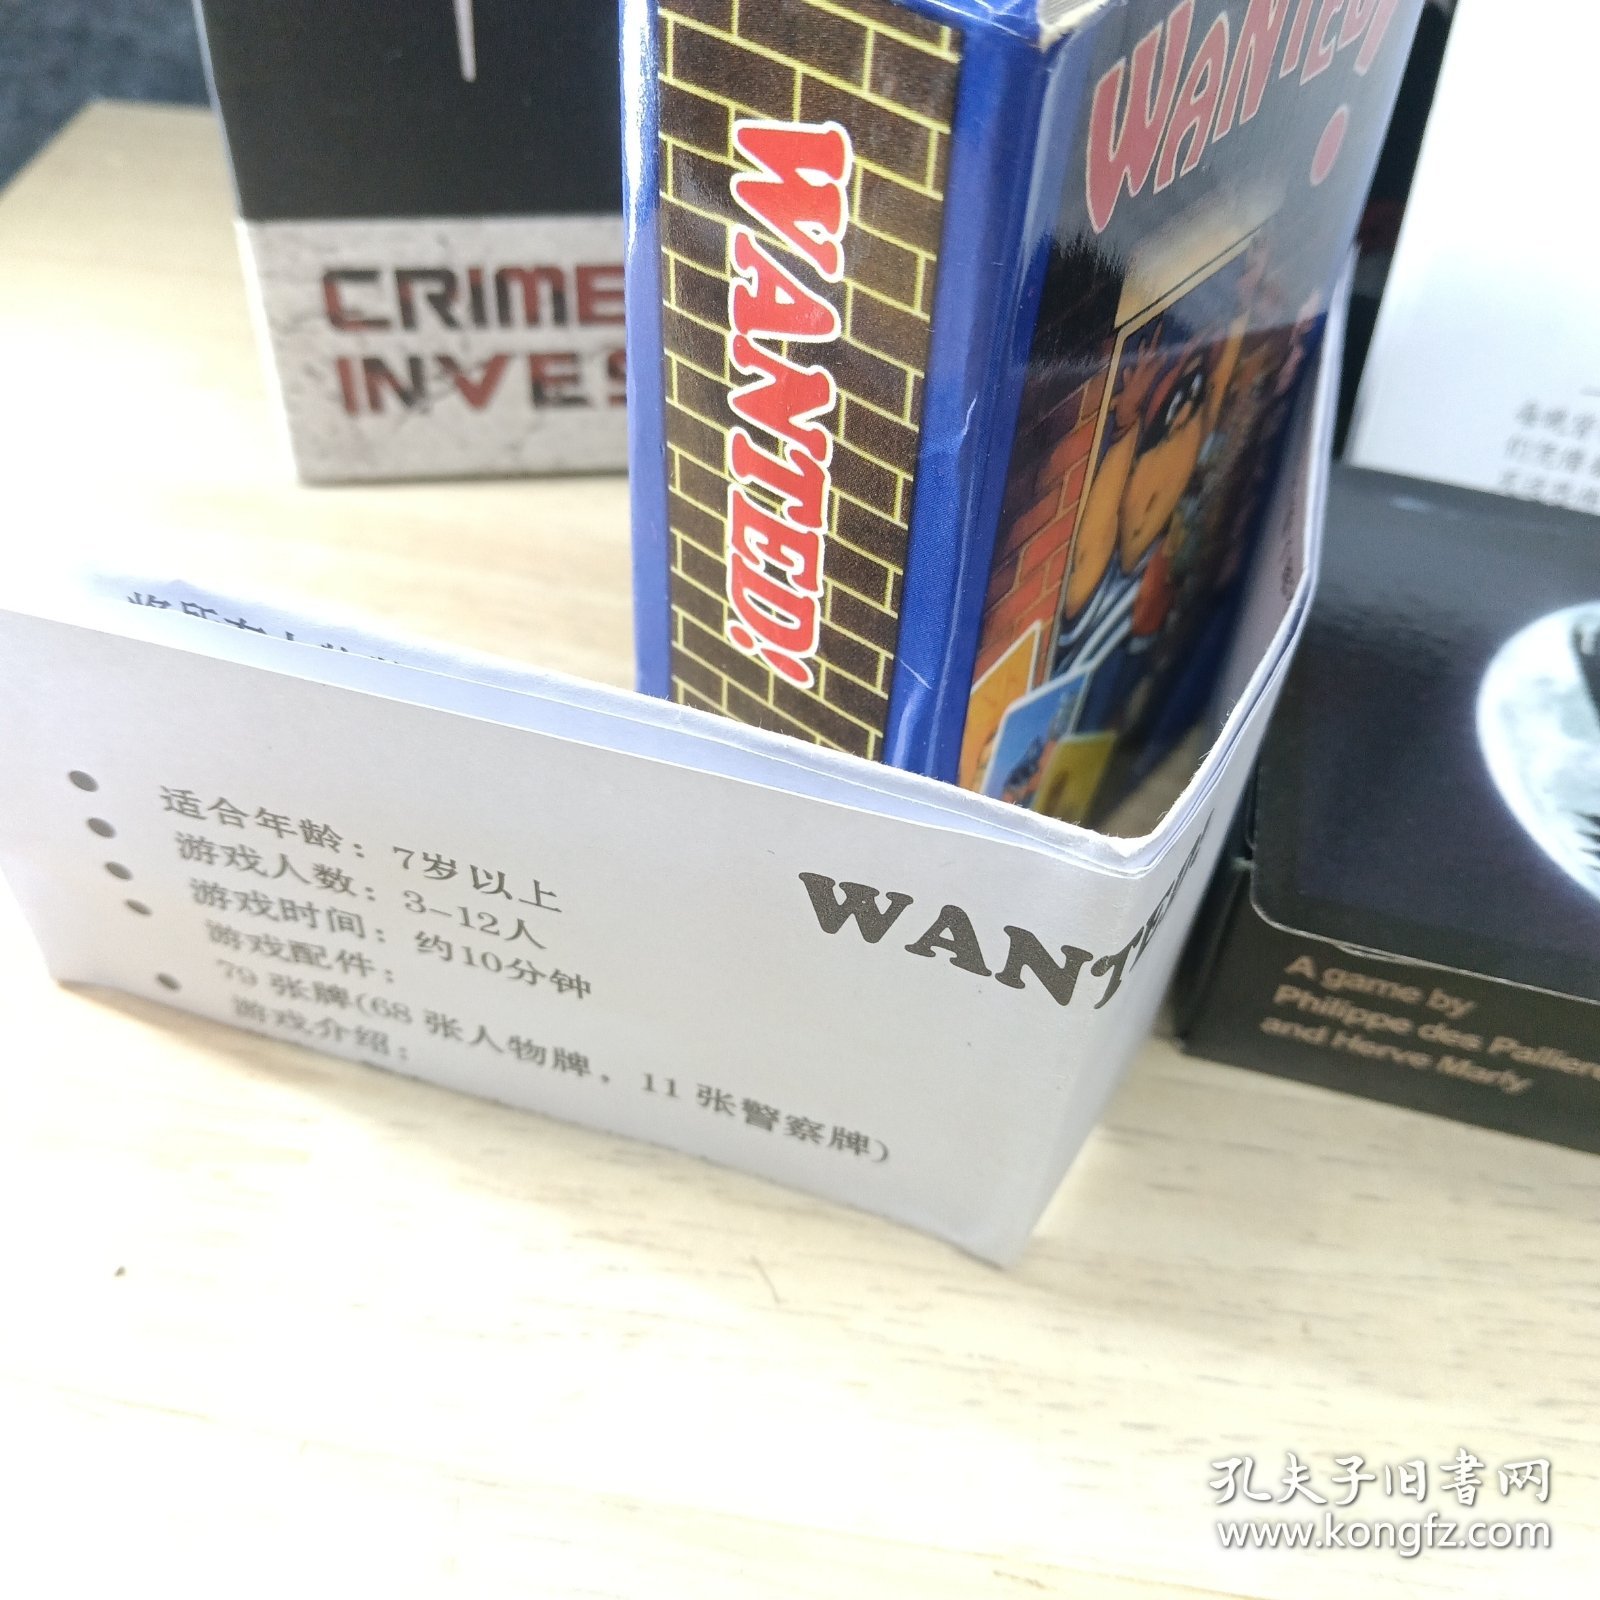 （新月狼人游戏卡片 破坏者游戏卡片 WANTED游戏卡片 带游戏说明书 ） 犯罪现场游戏卡片 四盒合售